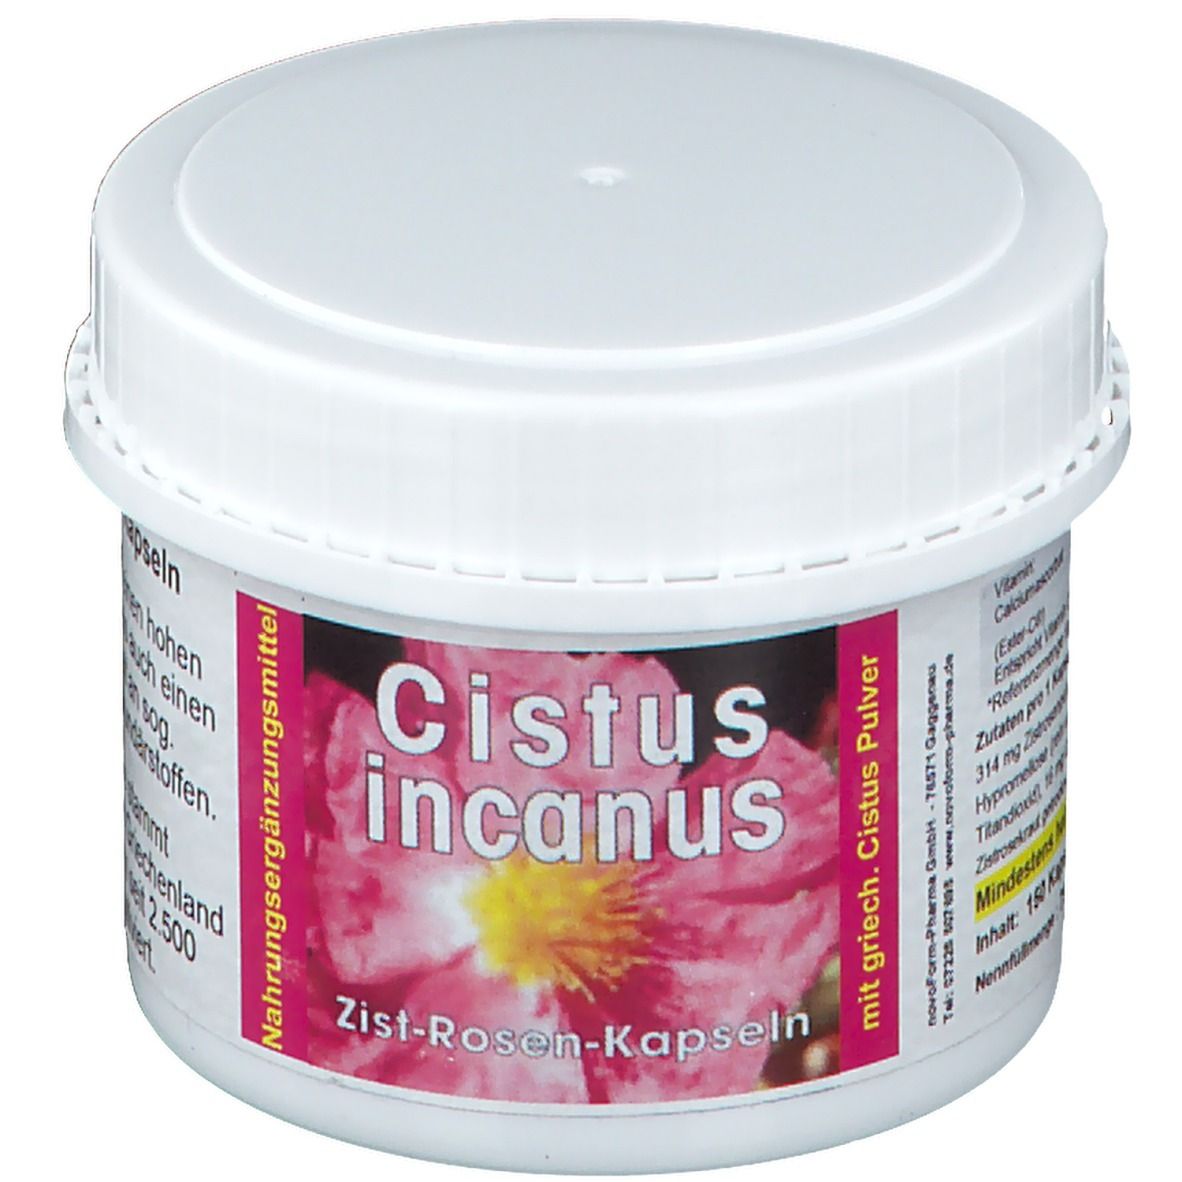 no brand Cistus Incanus